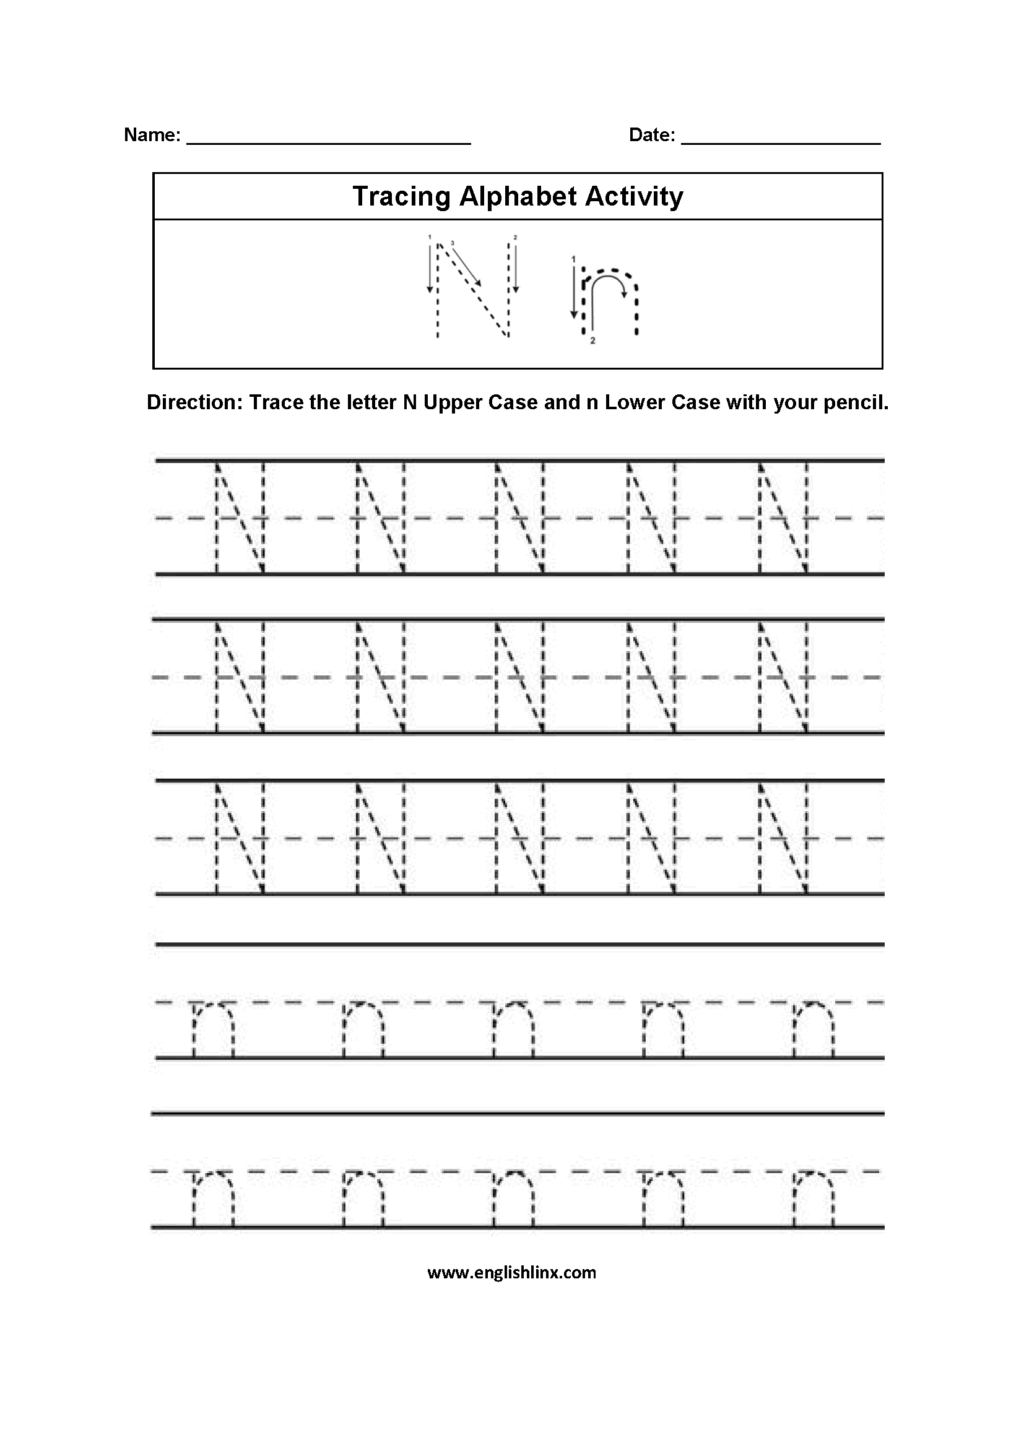 Worksheet ~ Letter Tracing Worksheets N Alphabet intended for N Letter Tracing